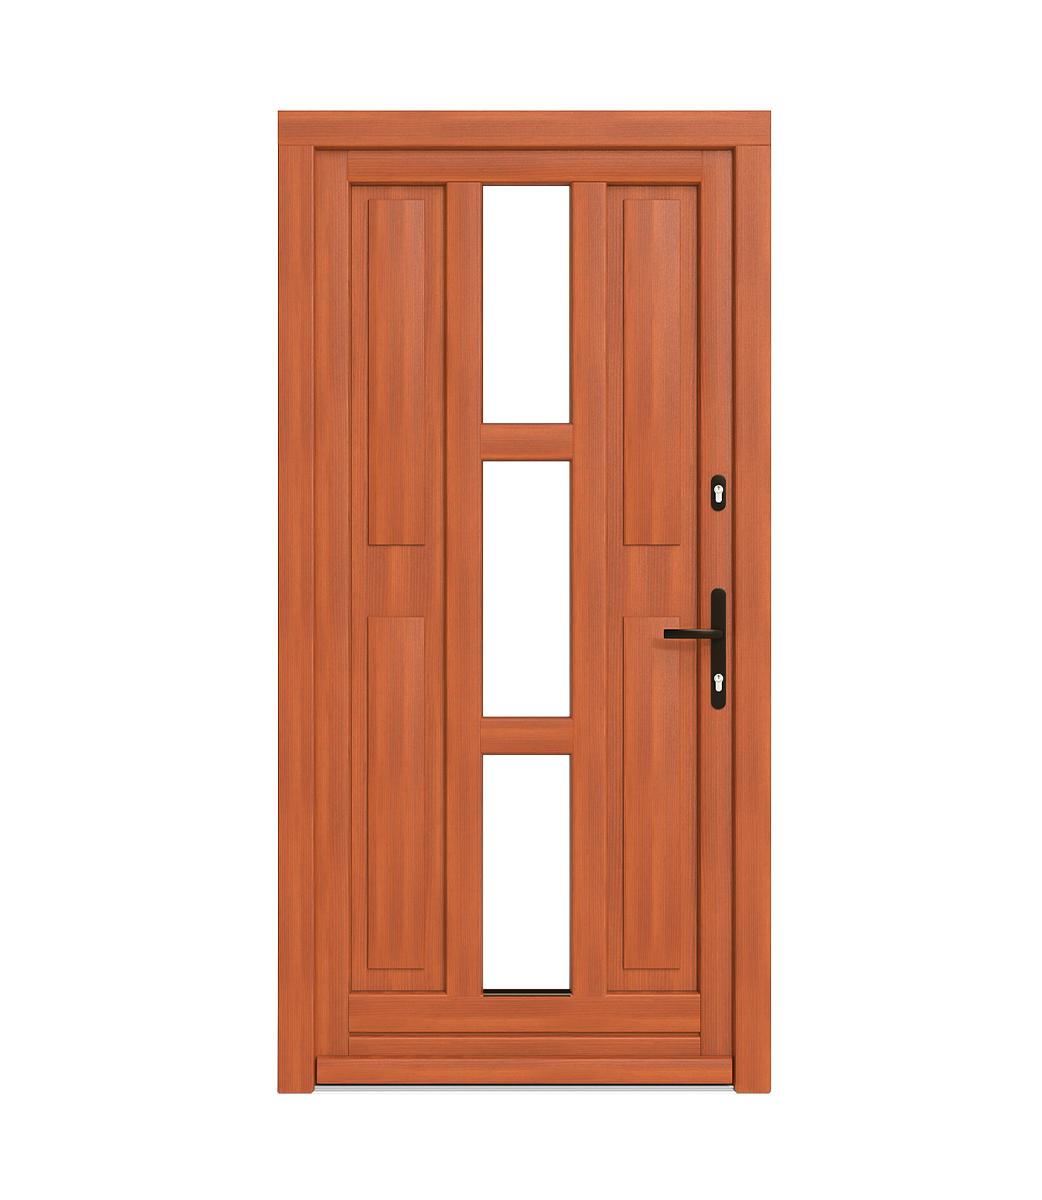 Przewiązki w drzwiach drewnianych